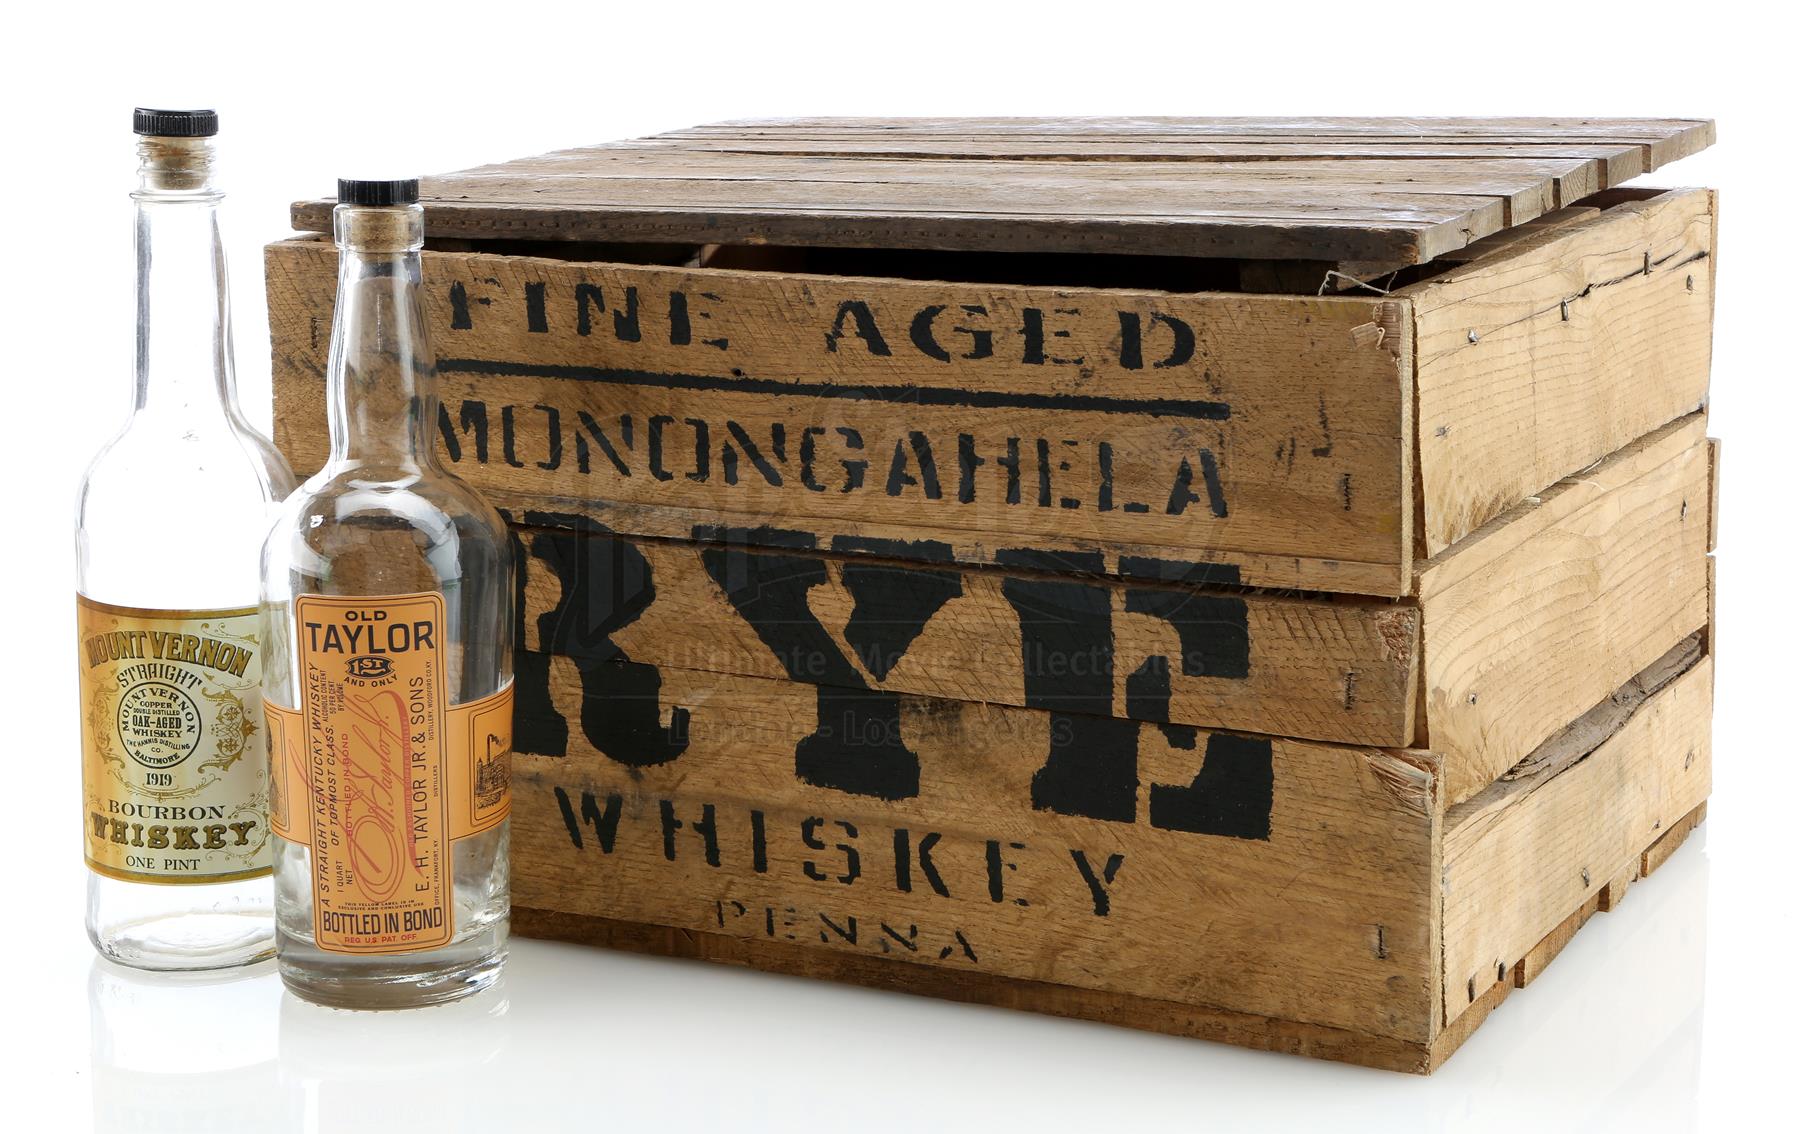 Fine Aged Monongahela Rye Whiskey Crate #3930